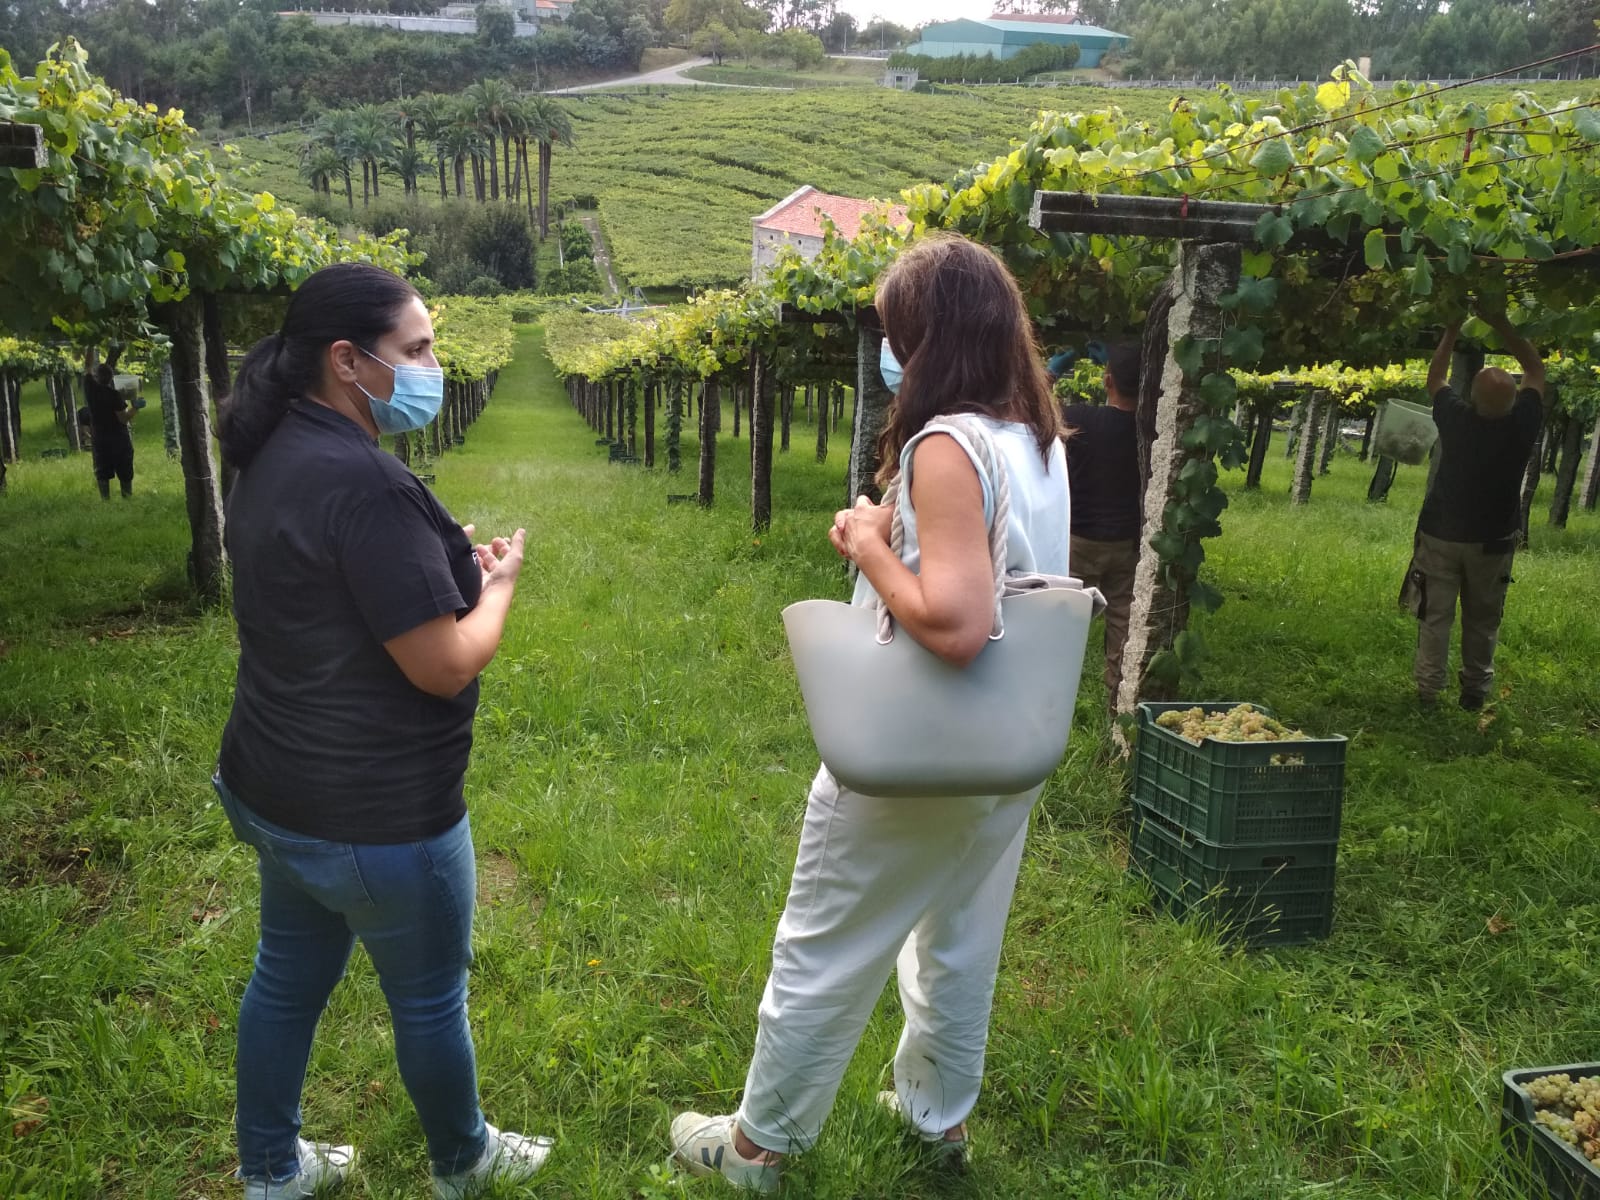 La Ruta do Viño Rías Baixas vuelve a destacar entre las más visitadas a pesar de la pandemia